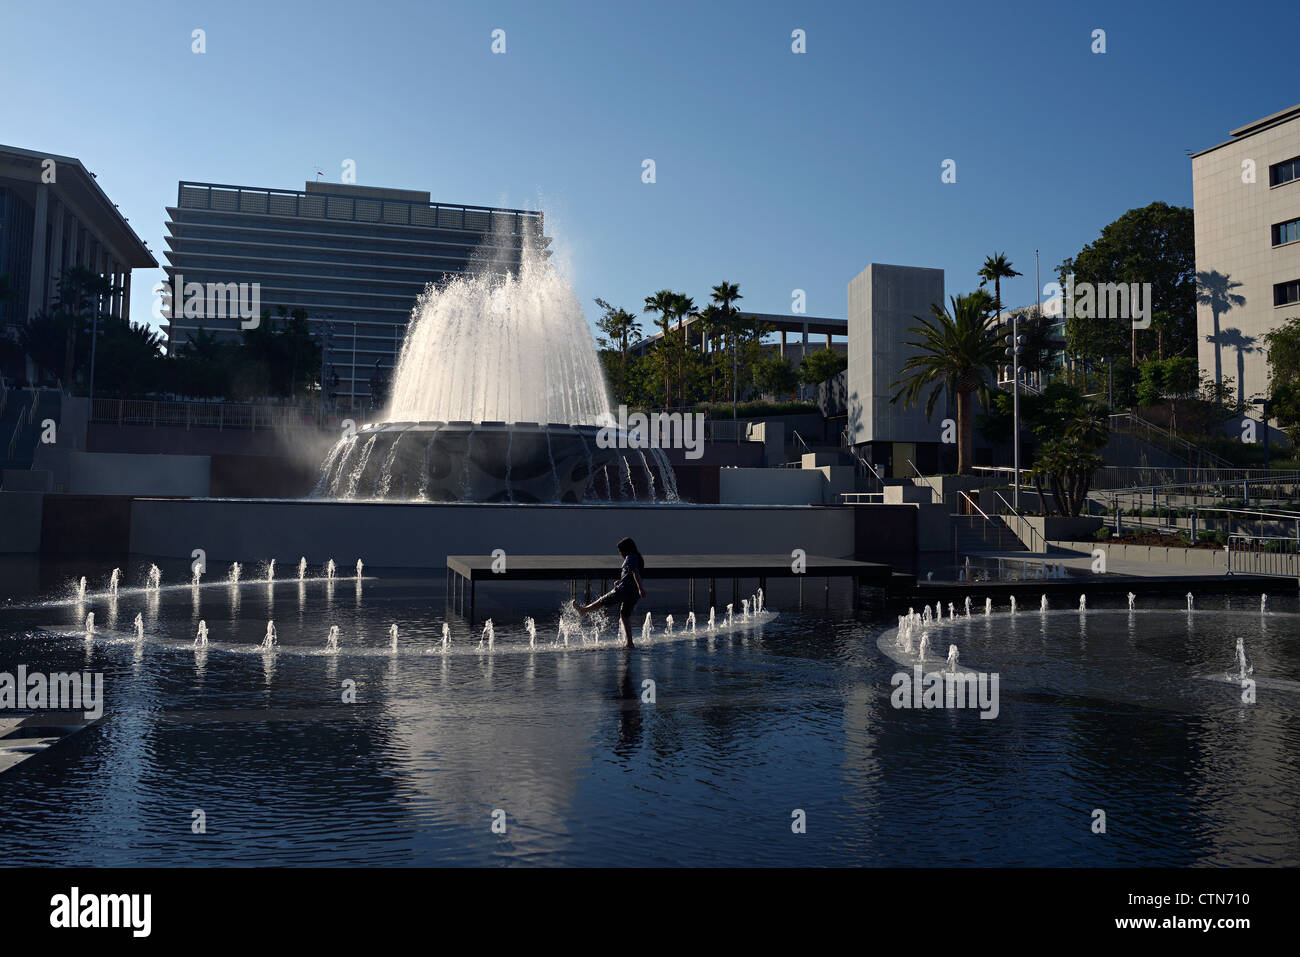 new grand park fountain in la Stock Photo